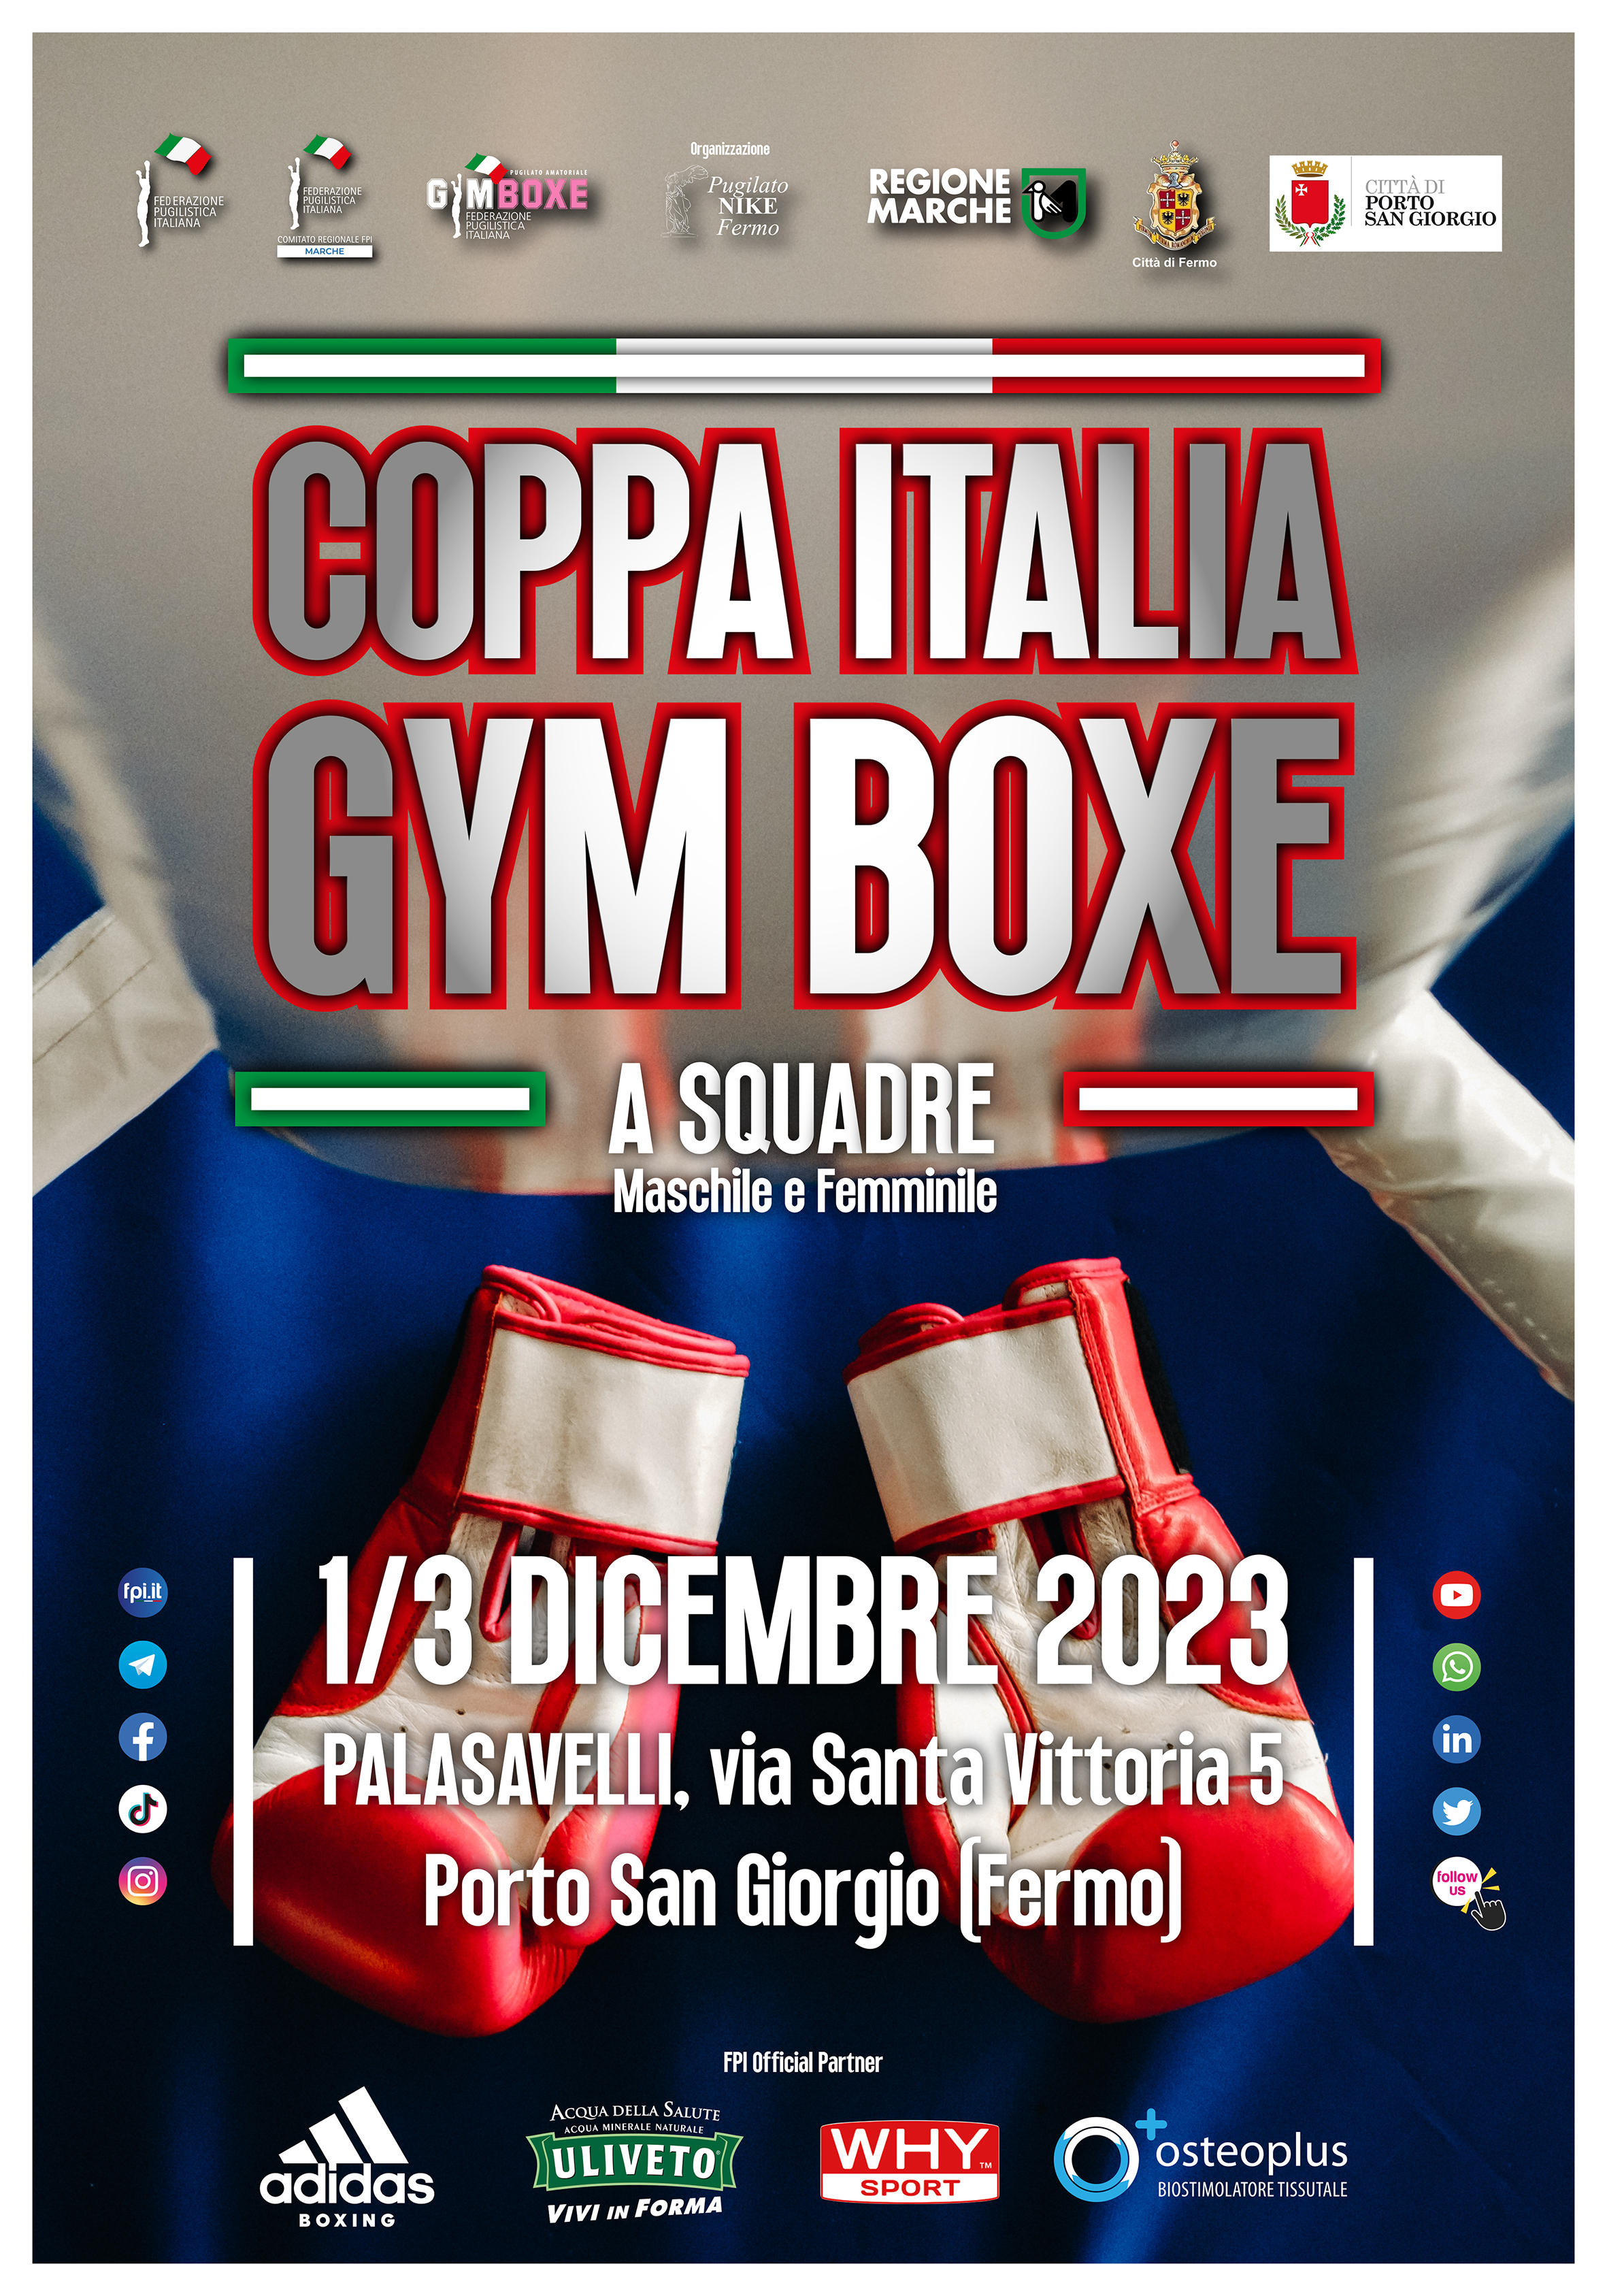 COPPA ITALIA A SQUADRE GYM BOXE 2023 - Fermo 1-3 dicembre p.v.